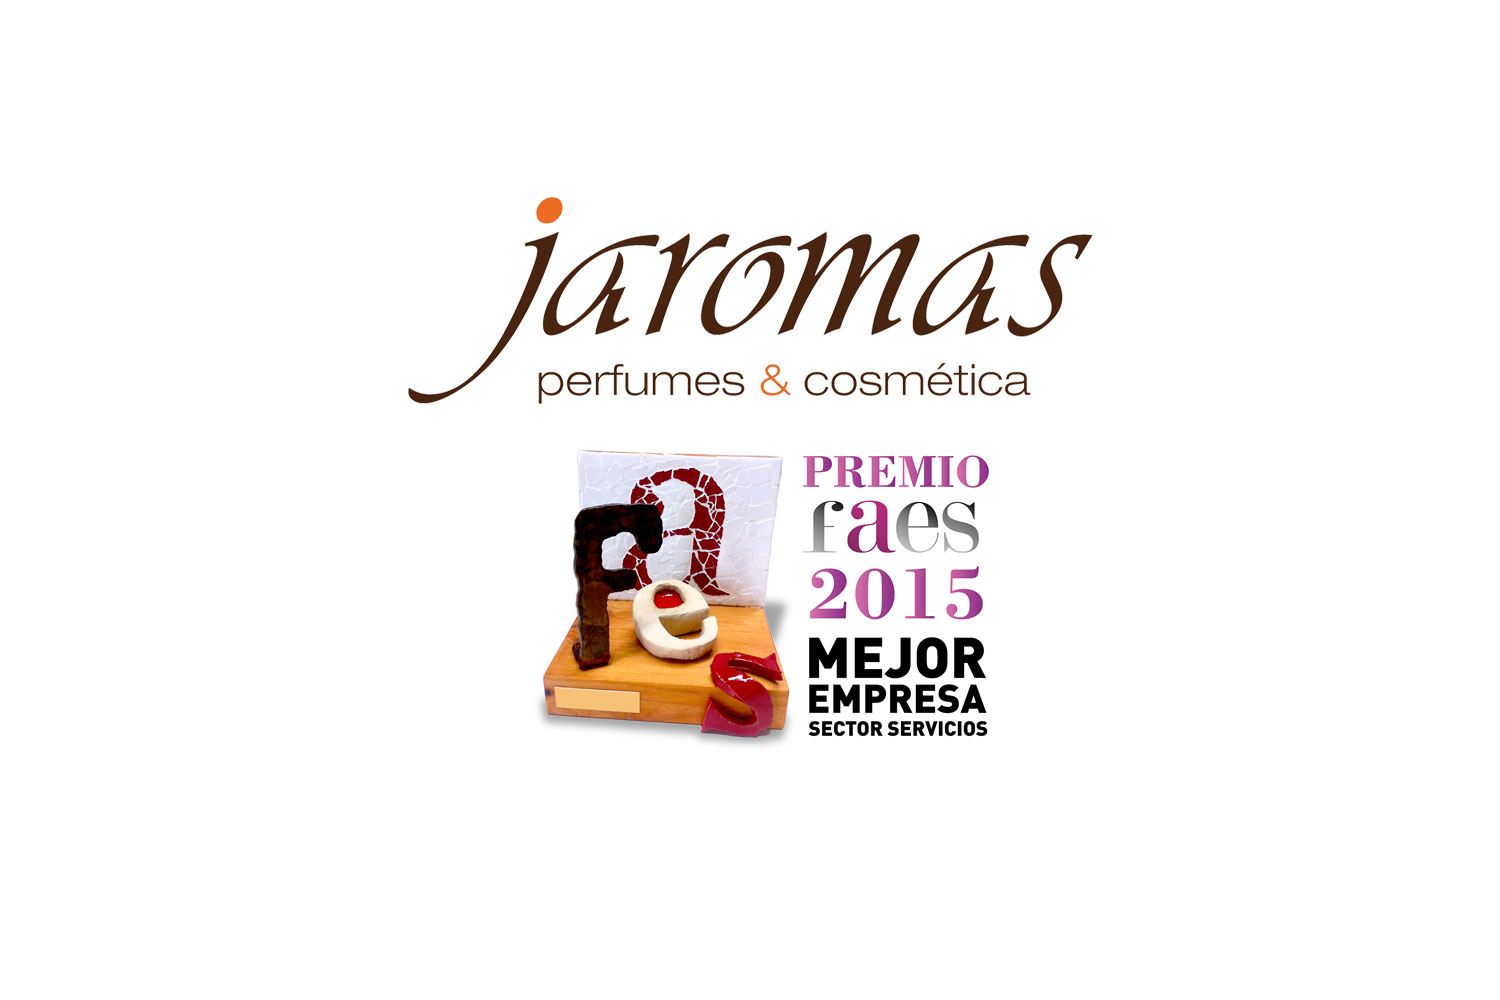 Perfumes - Jaromas